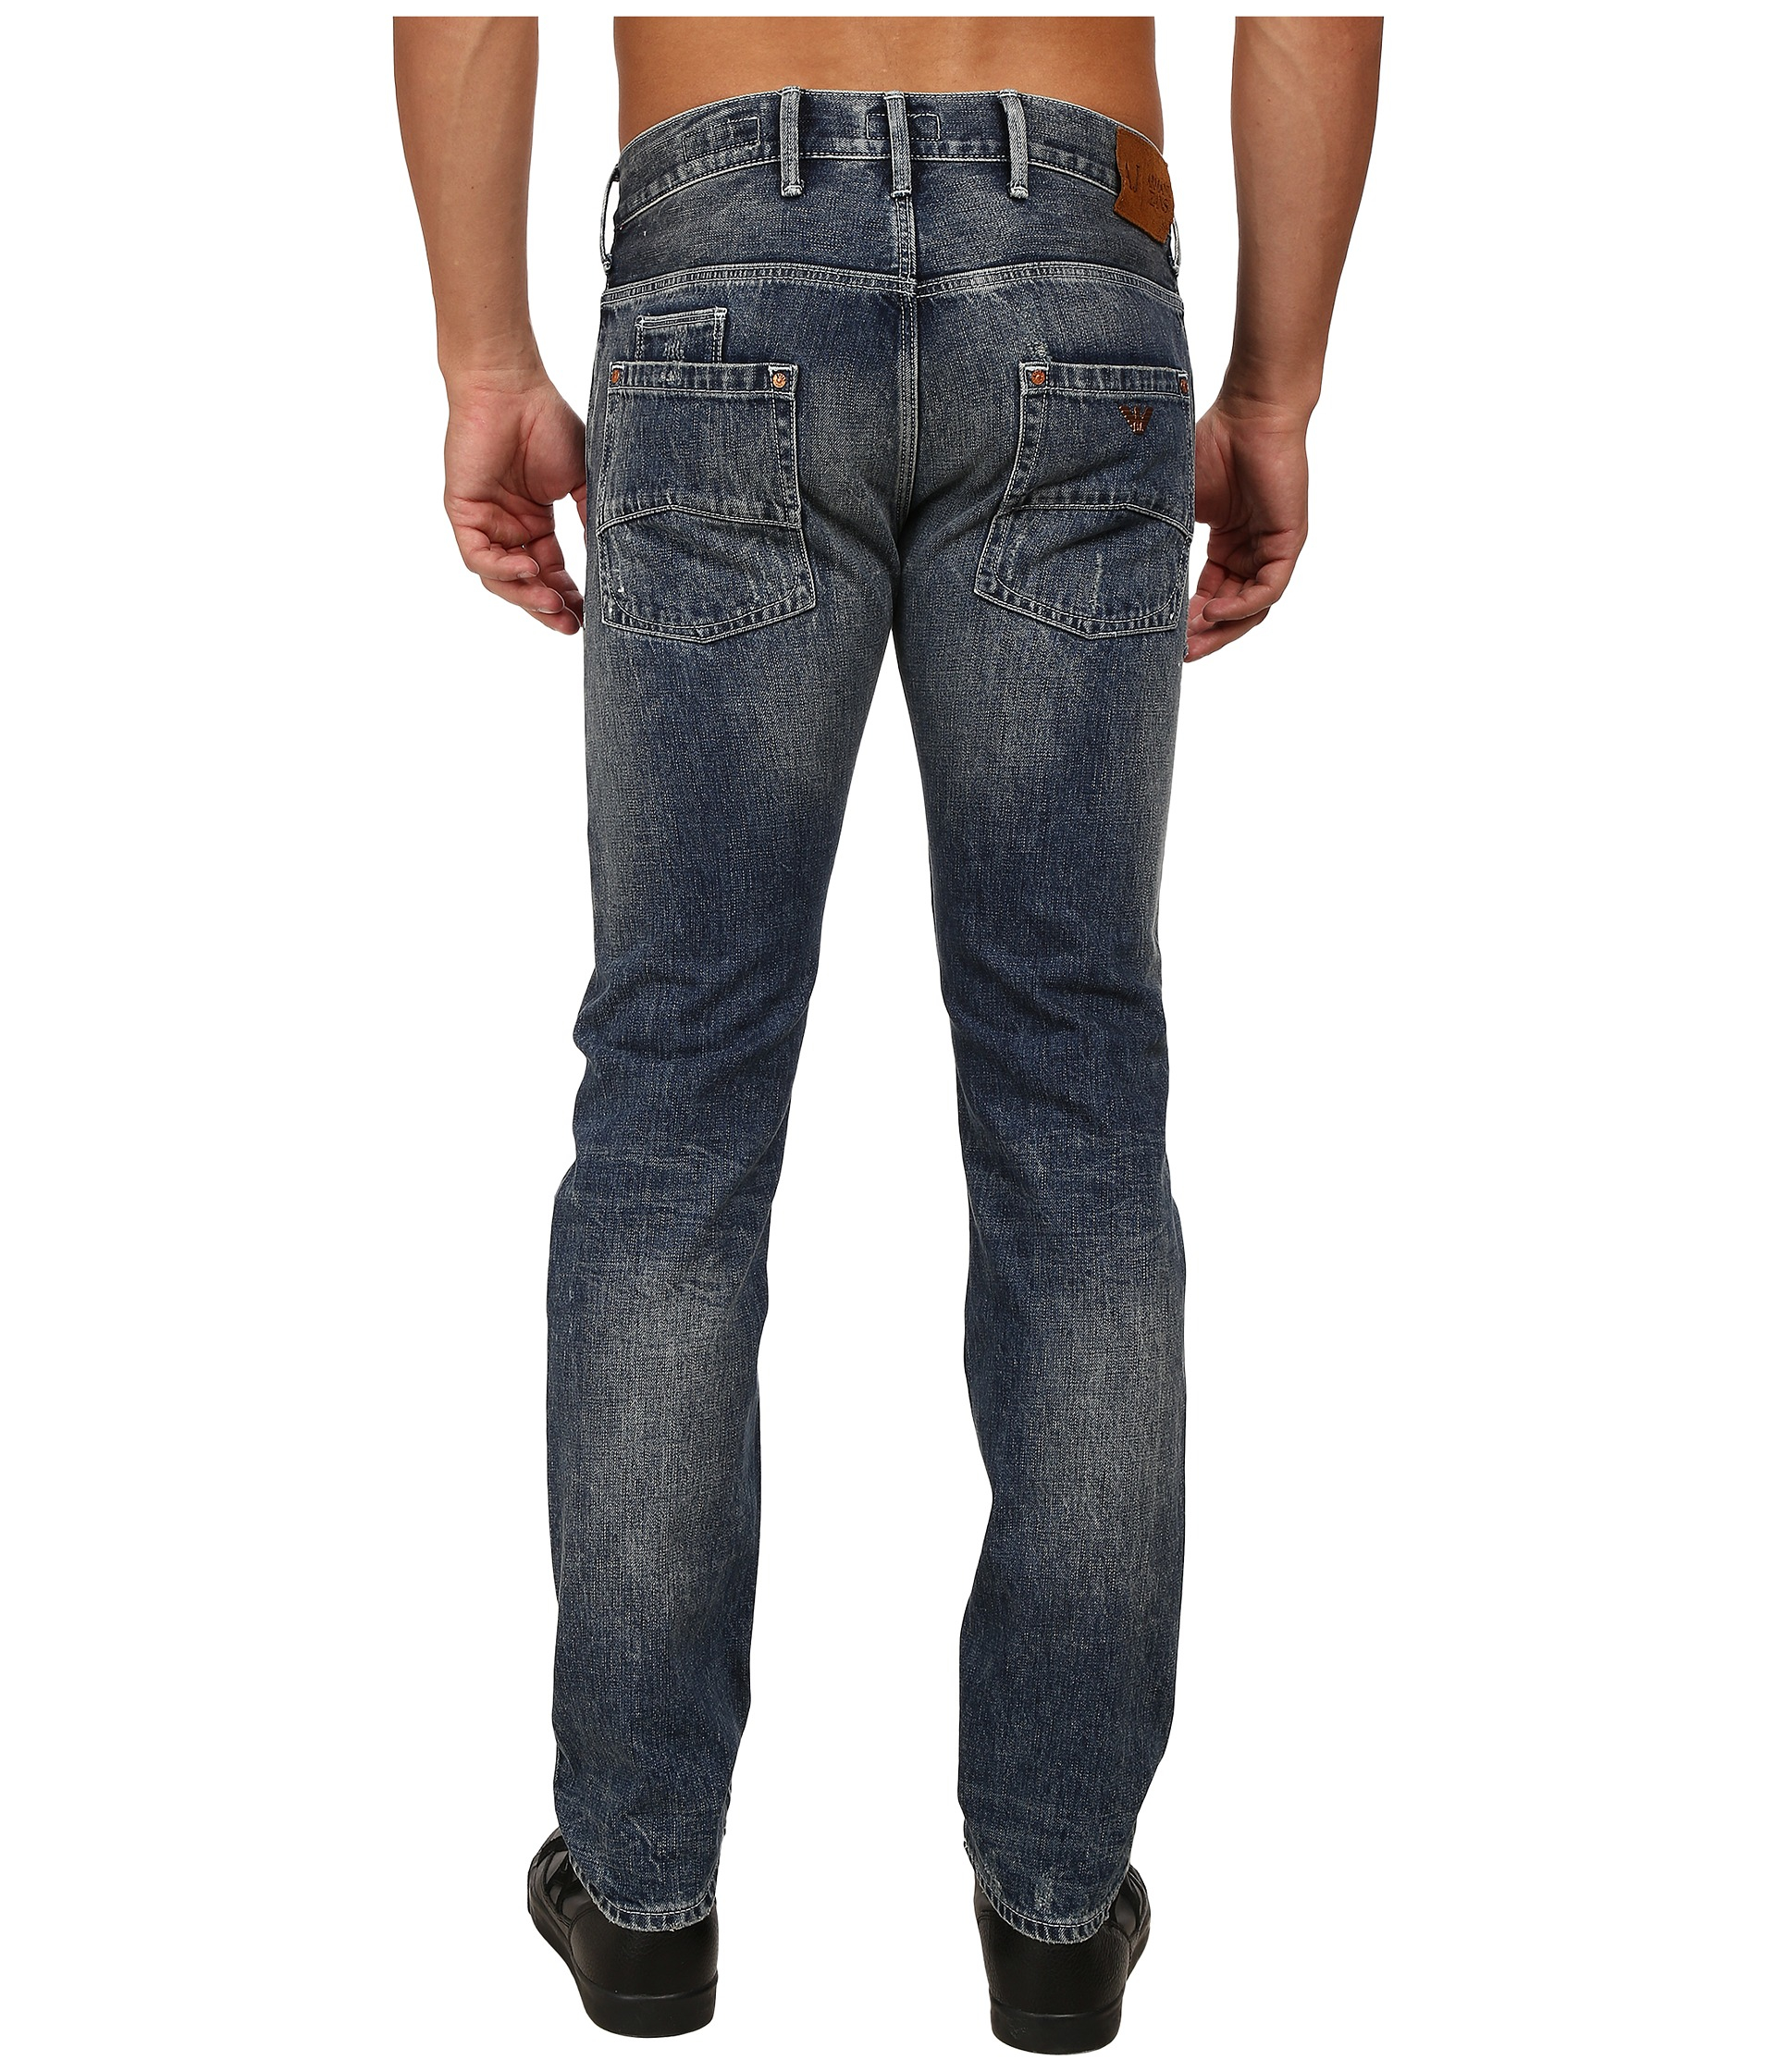 j28 armani jeans, OFF 71%,www.amarkotarim.com.tr